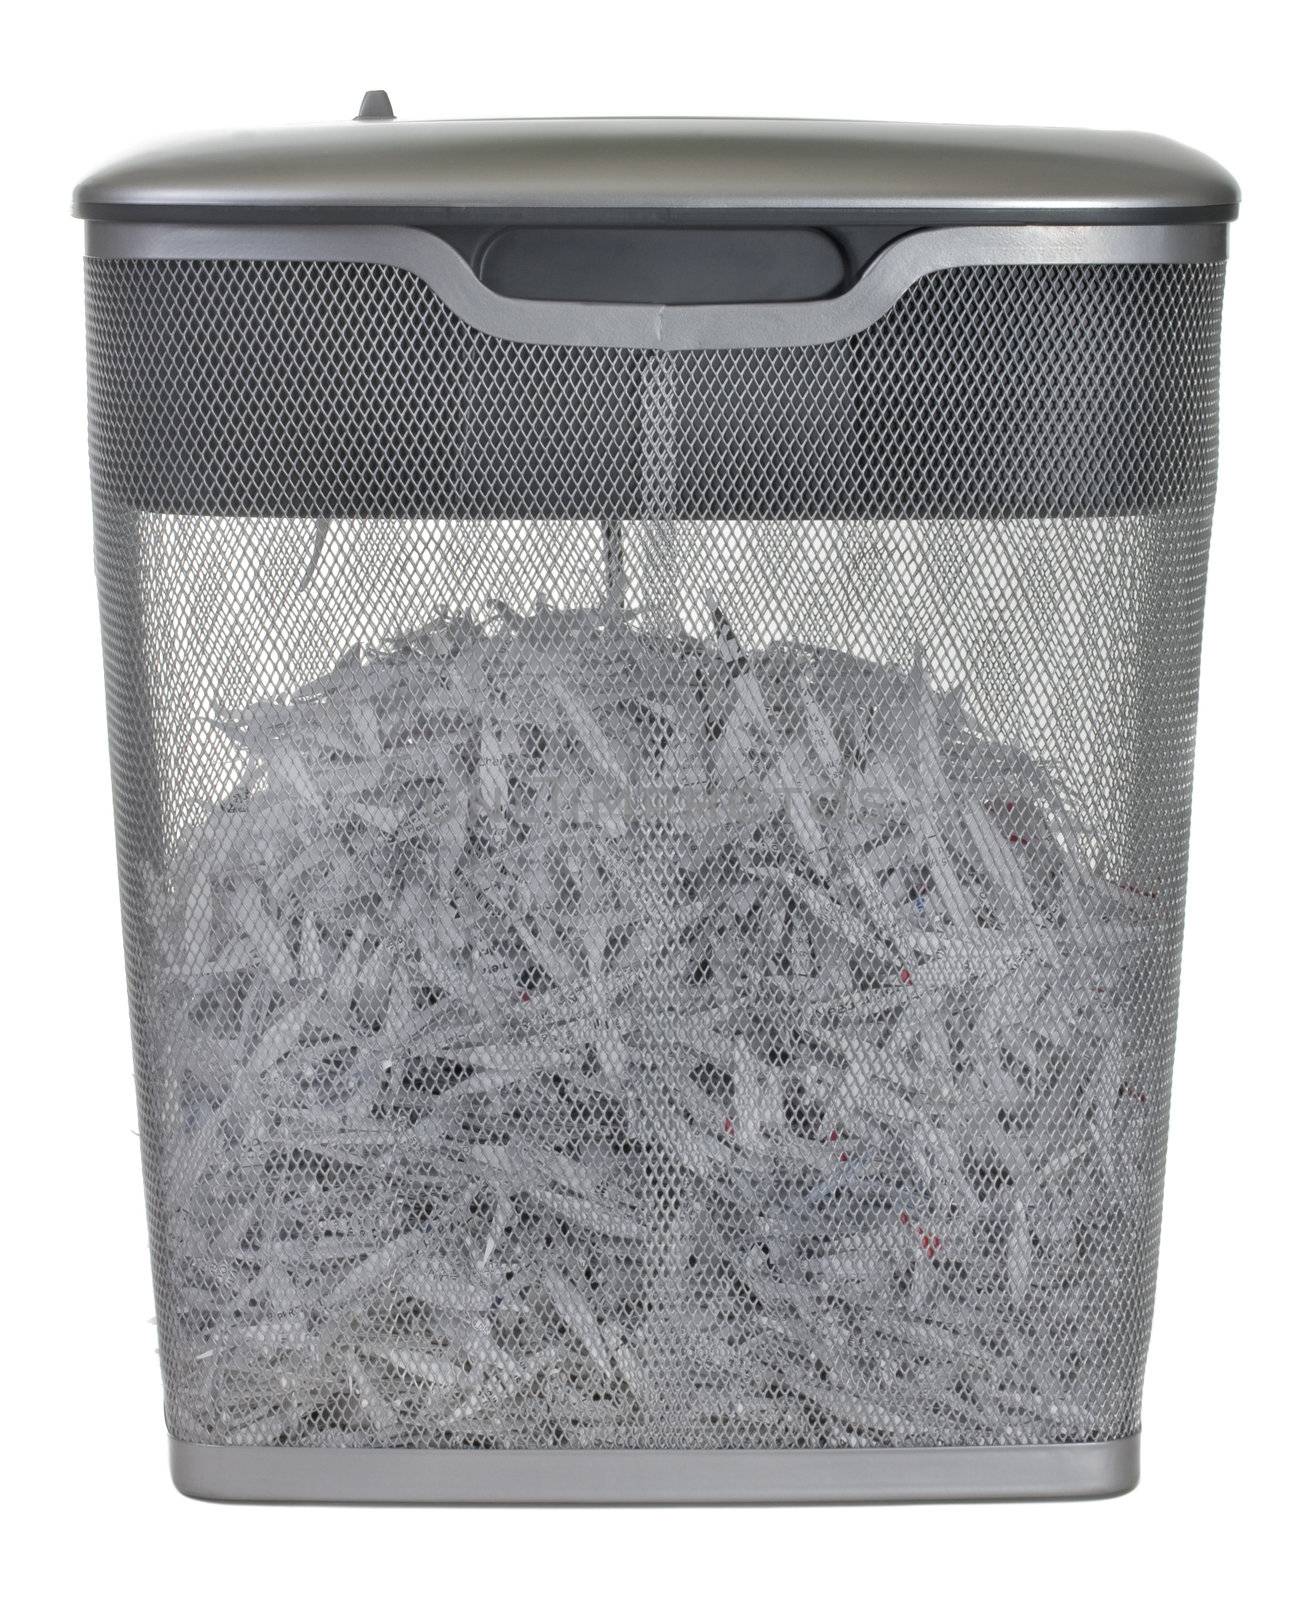 light duty paper shredder by PixelsAway